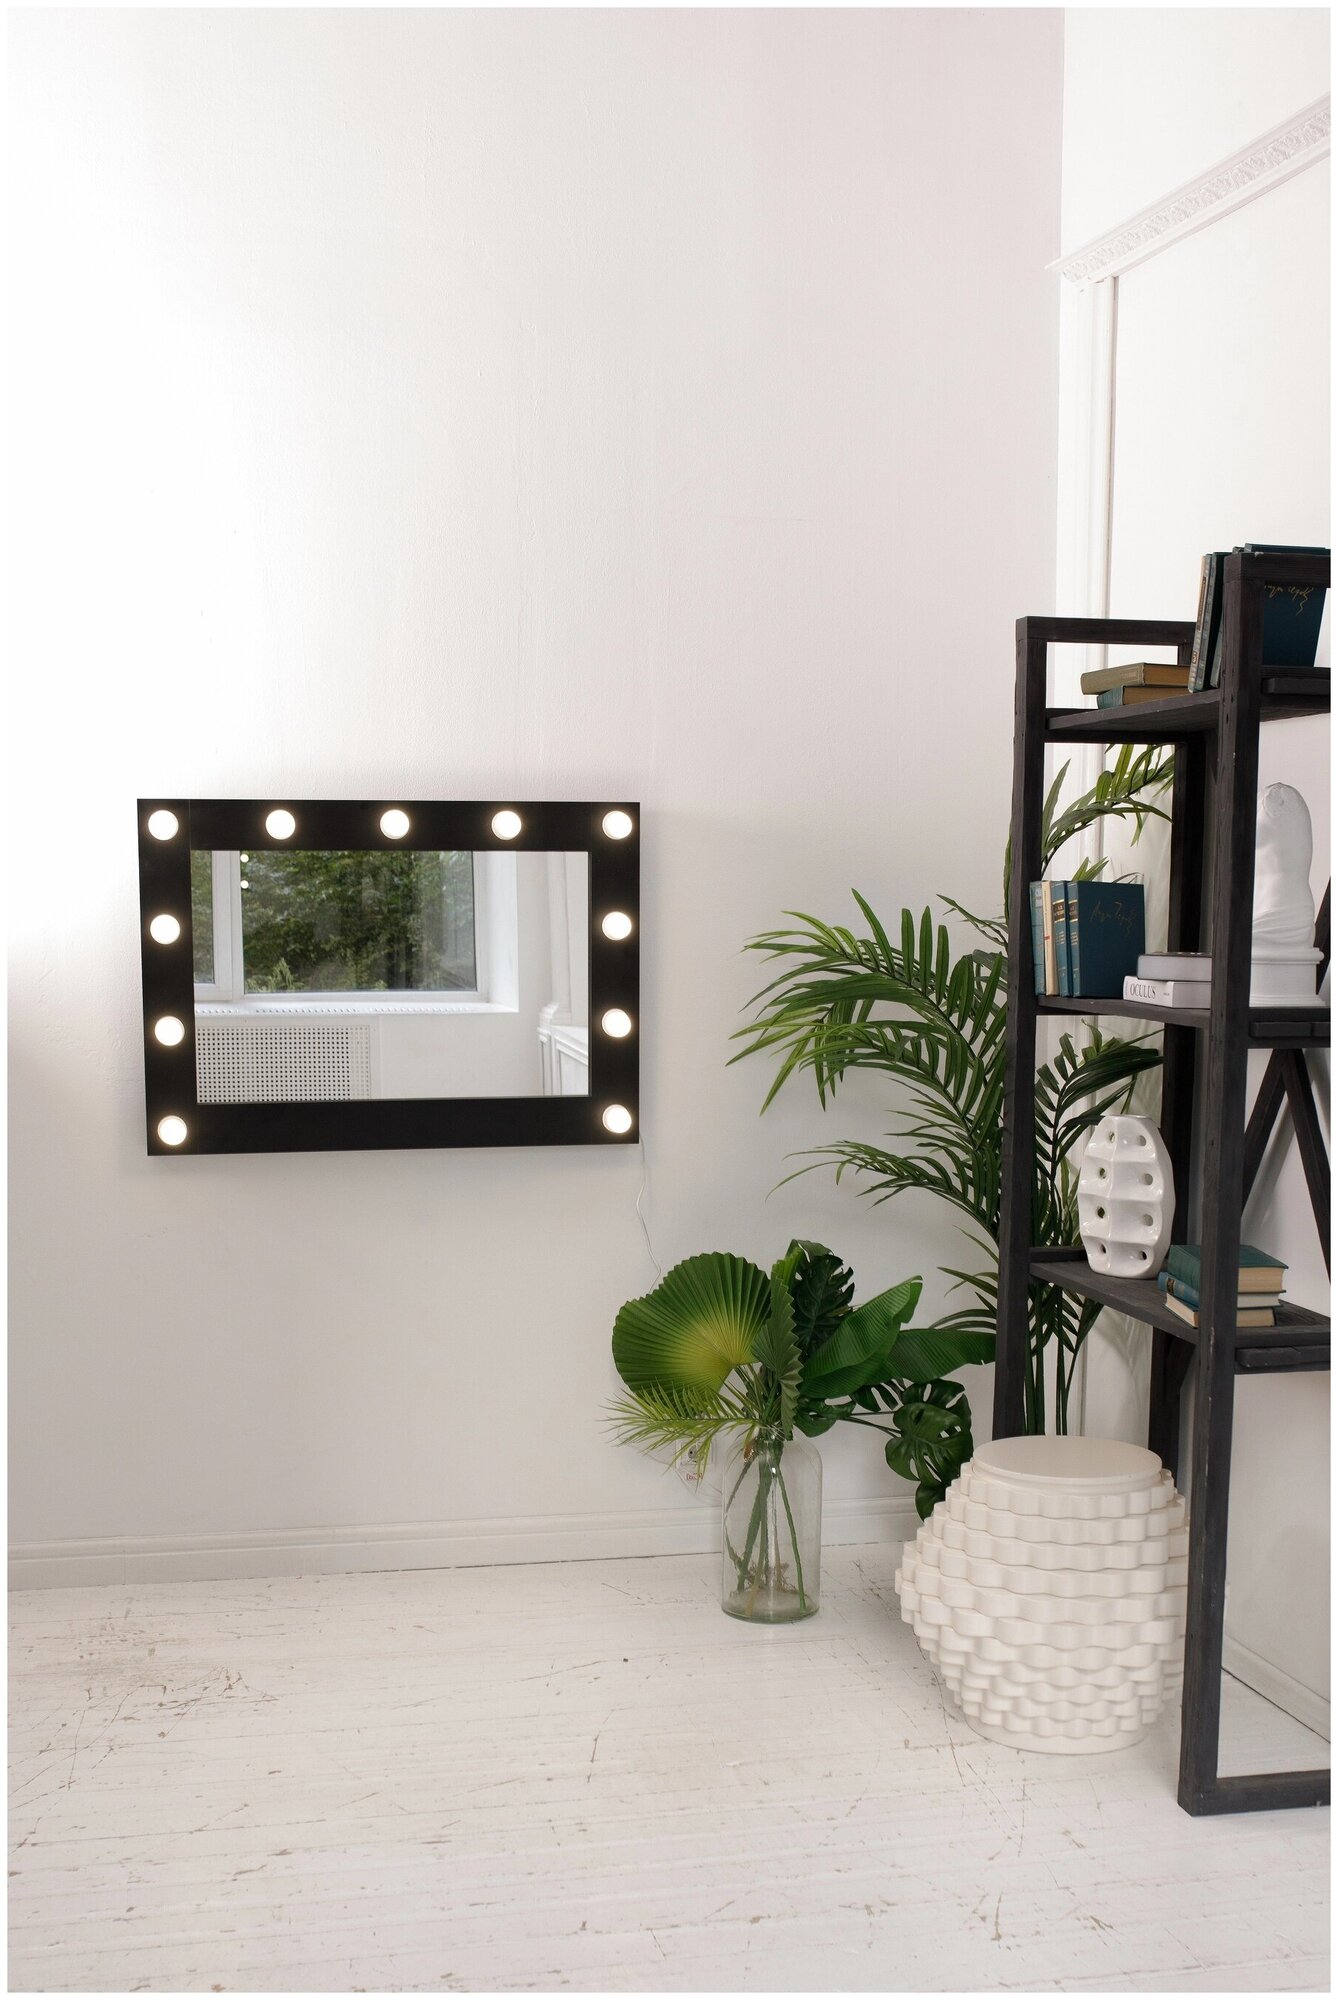 Гримерное зеркало GM Mirror, 80 см х 60 см, черный / косметическое зеркало - фотография № 2